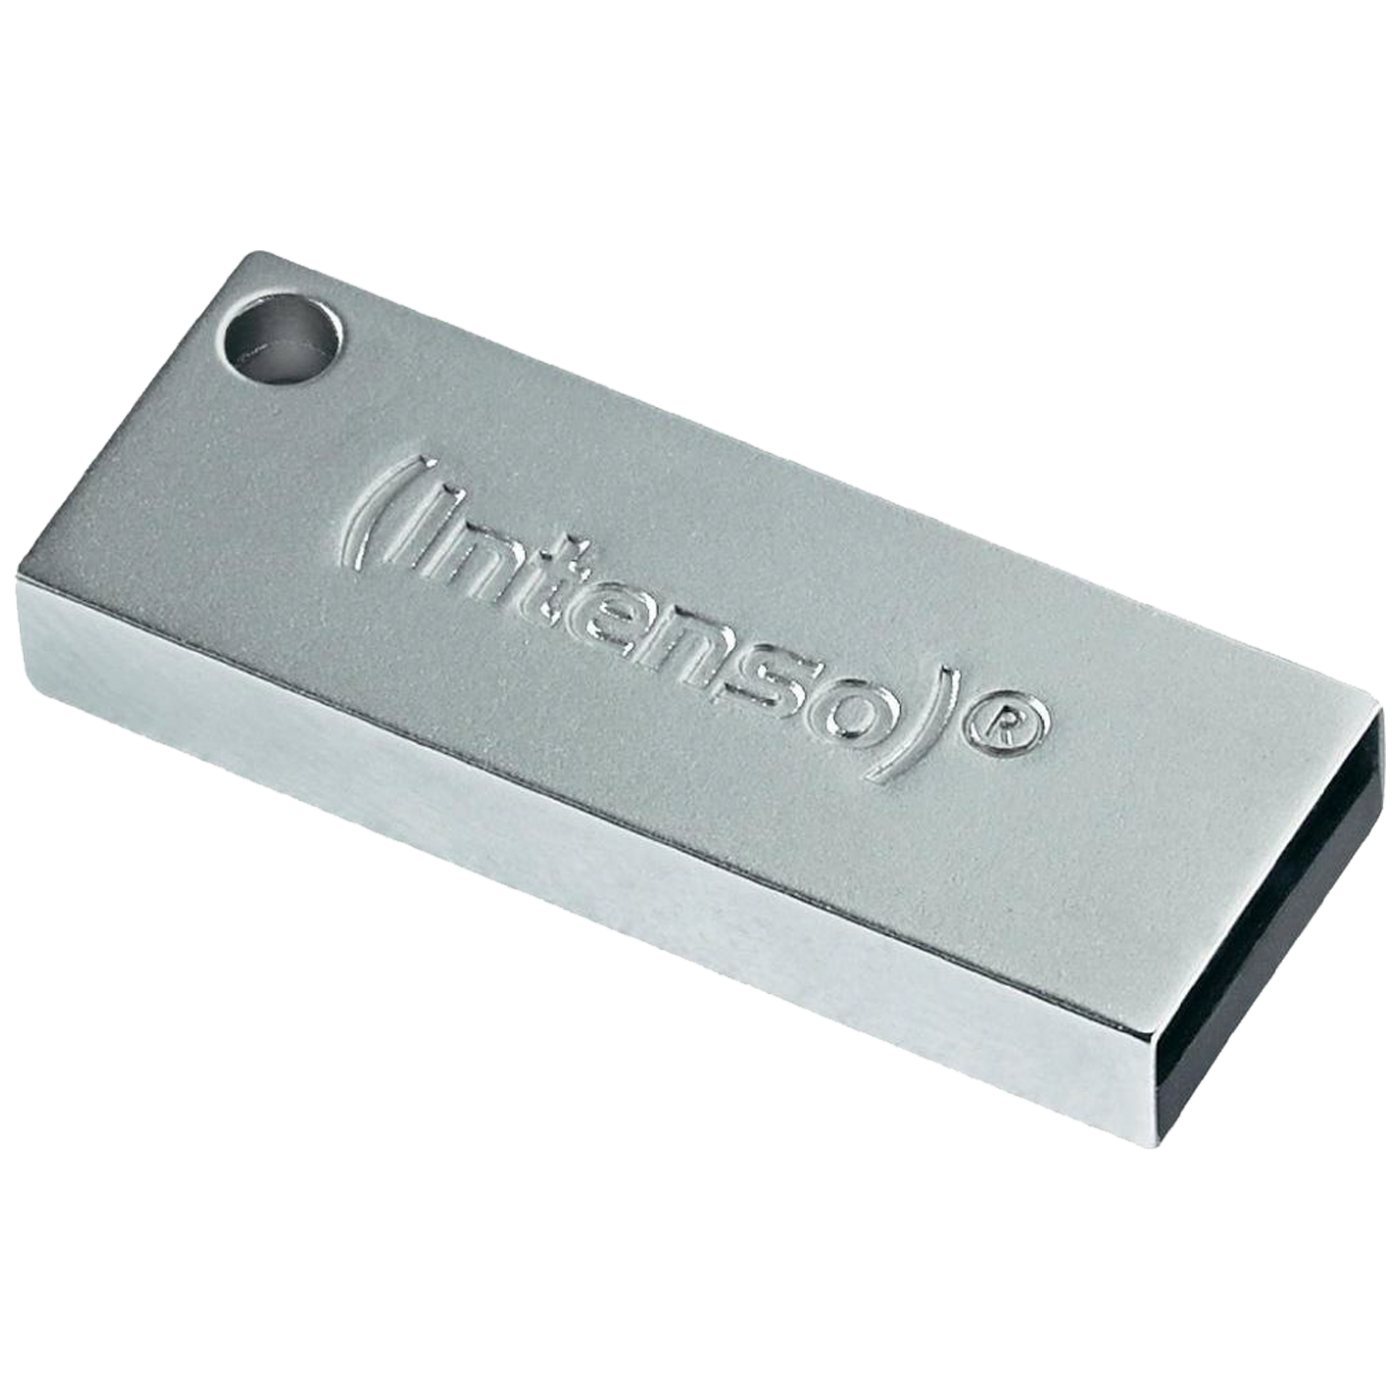 USB3.0-32GB/Premium Line